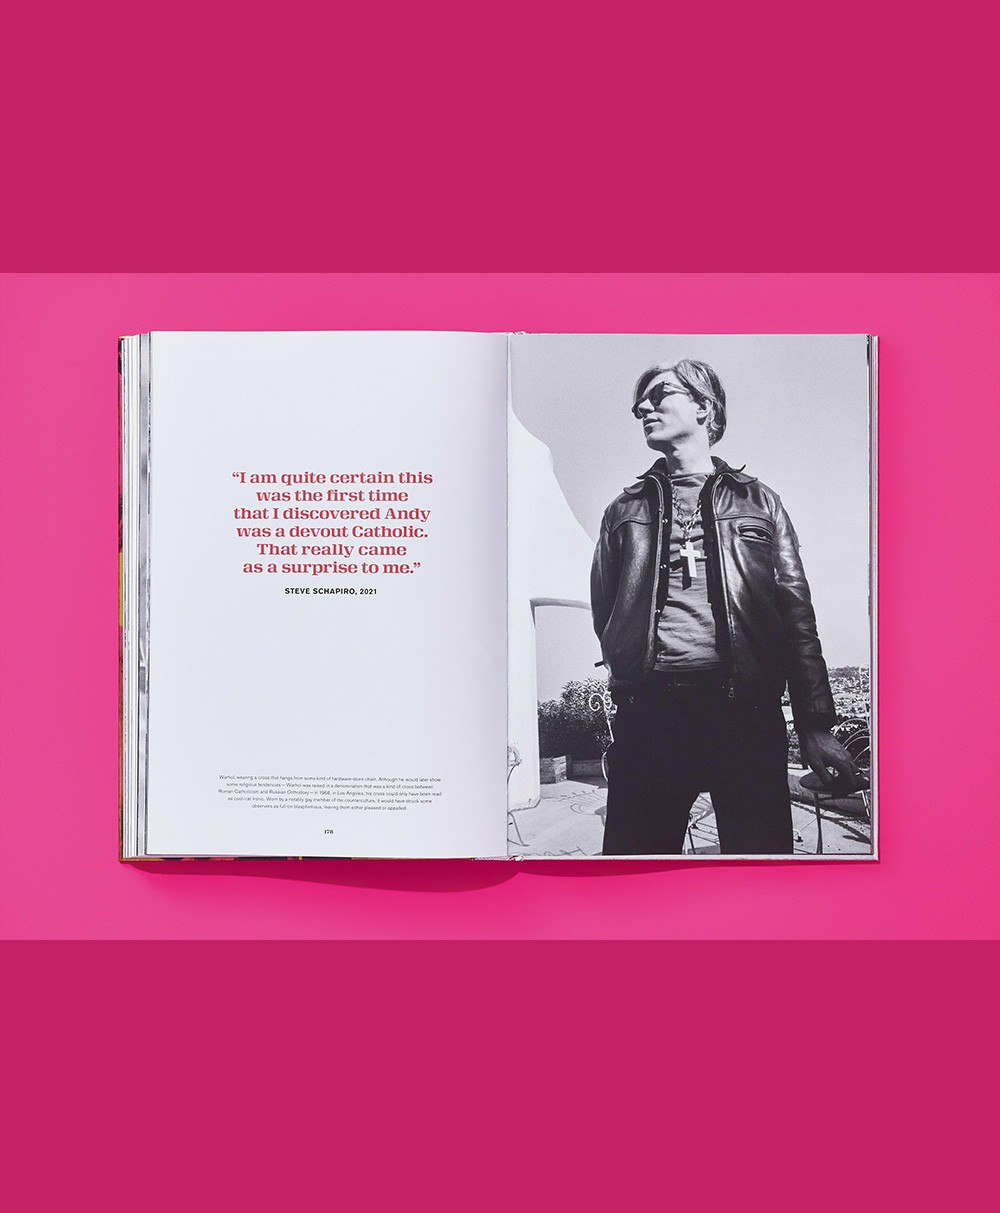 Produktbild des Bildbandes Steve Schapiro. Andy Warhol and Friends vom Taschen Verlag - RAUM concept store